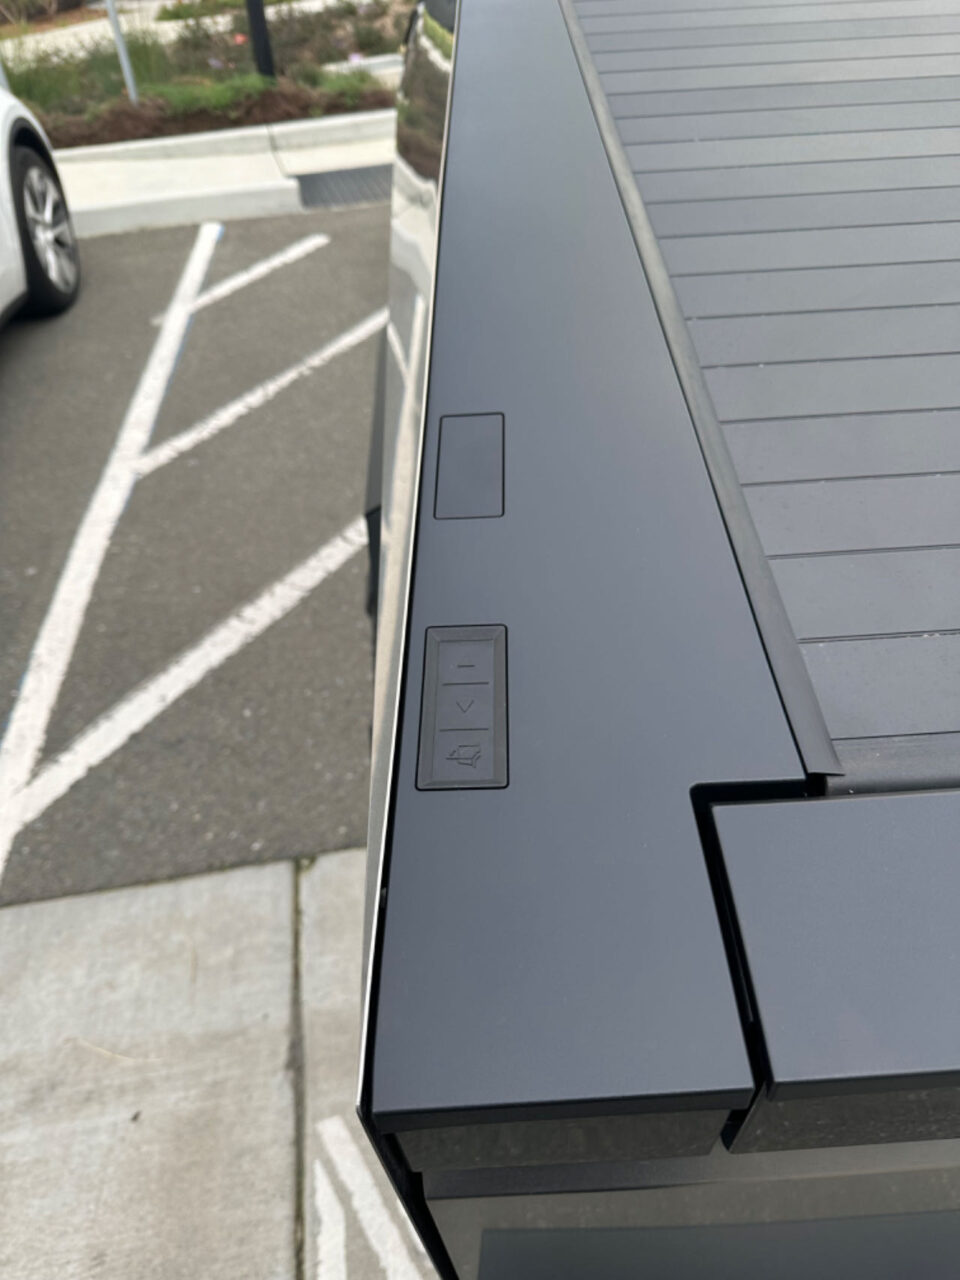 Widok na panel sterowania windą zewnętrzną z przyciskami do wyboru piętra, przy nieostrych liniiach oznakowania parkingu w tle.